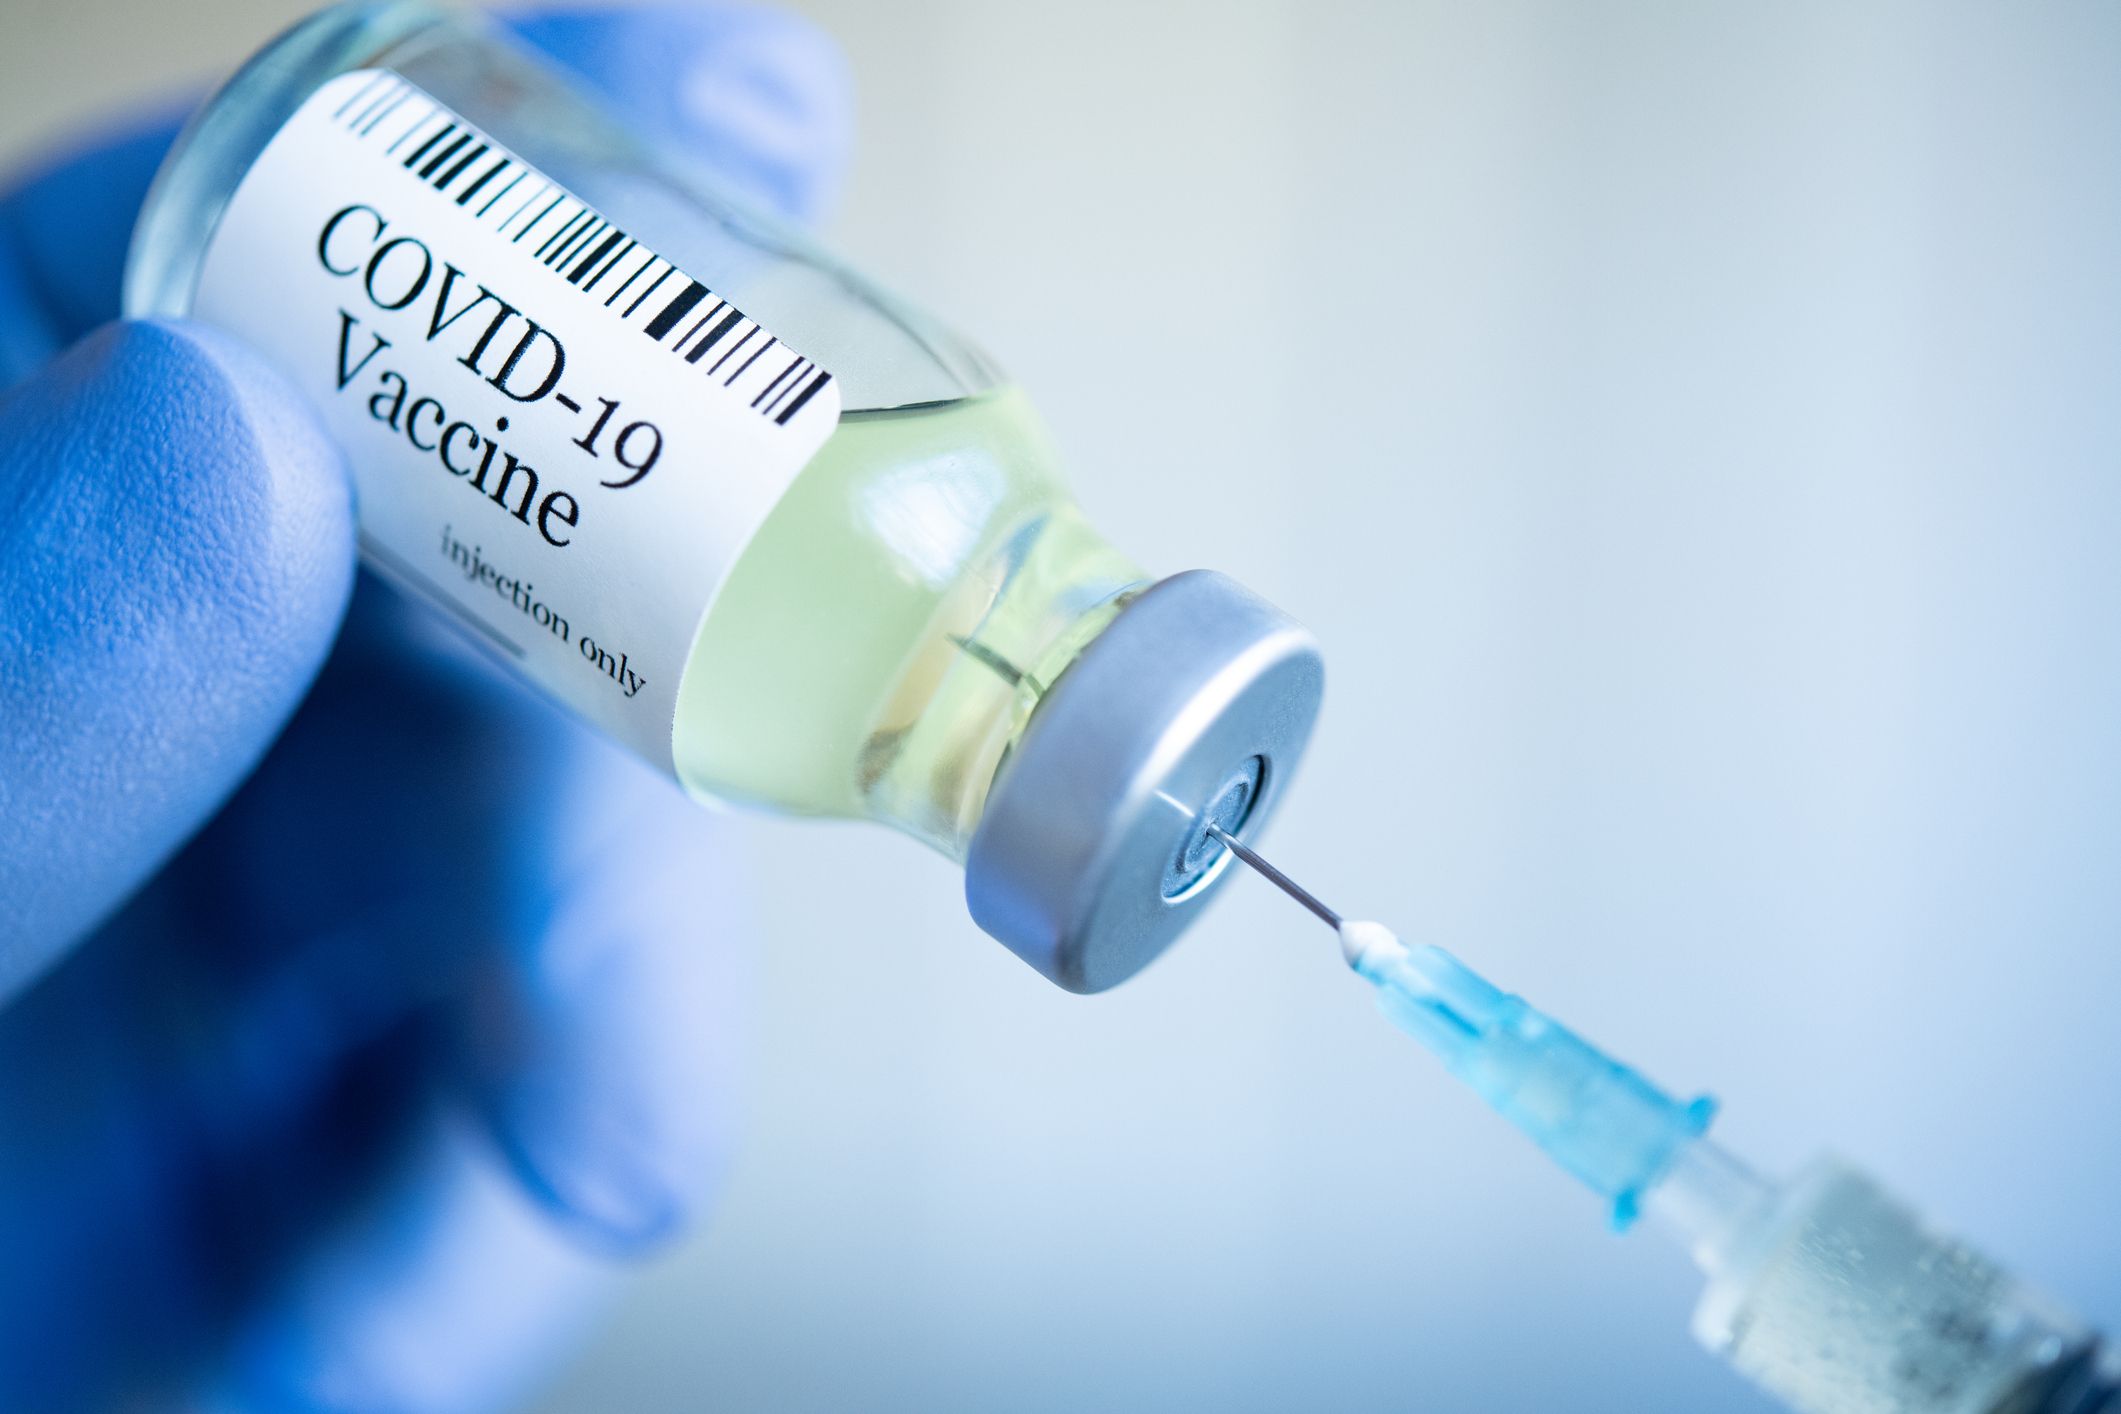 生理 コロナ ワクチン 「閉経したがワクチン接種で生理再開」…米国が副反応追跡へ